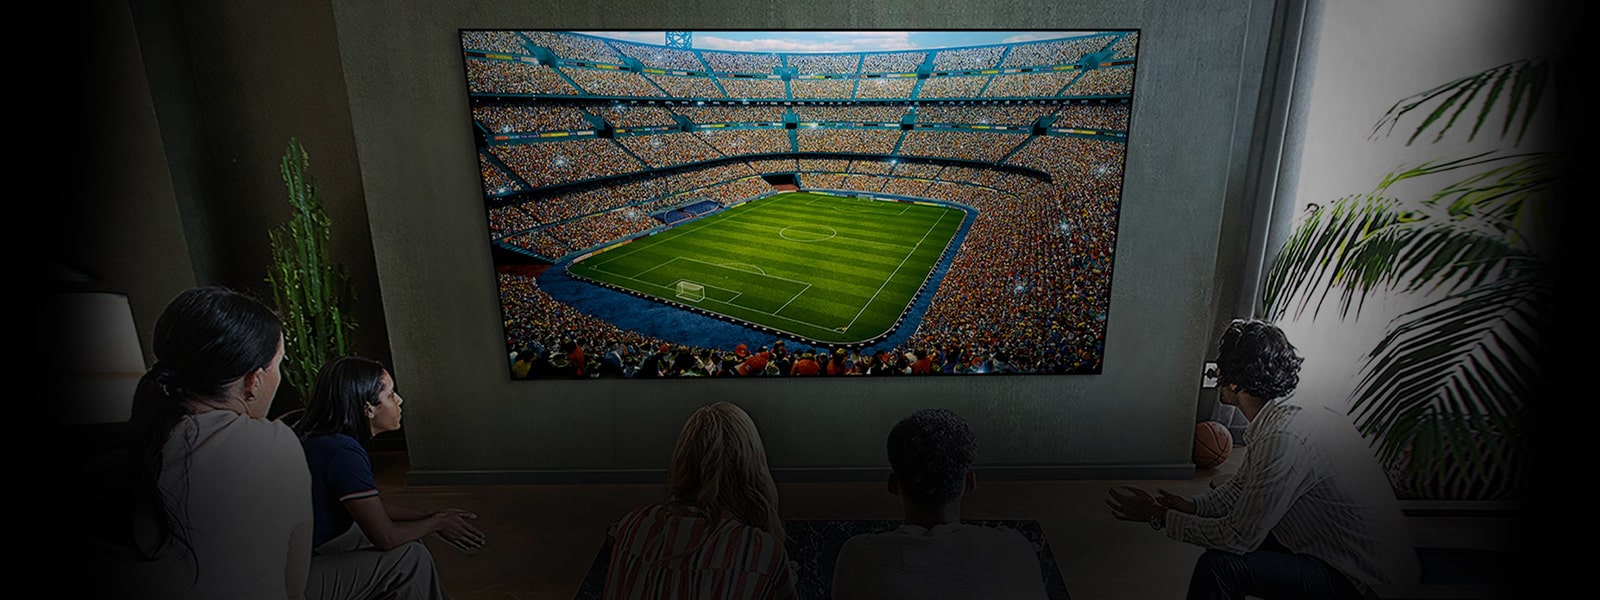 אנשים צופים במשחק כדורגל במסך ענק בחדר מגורים